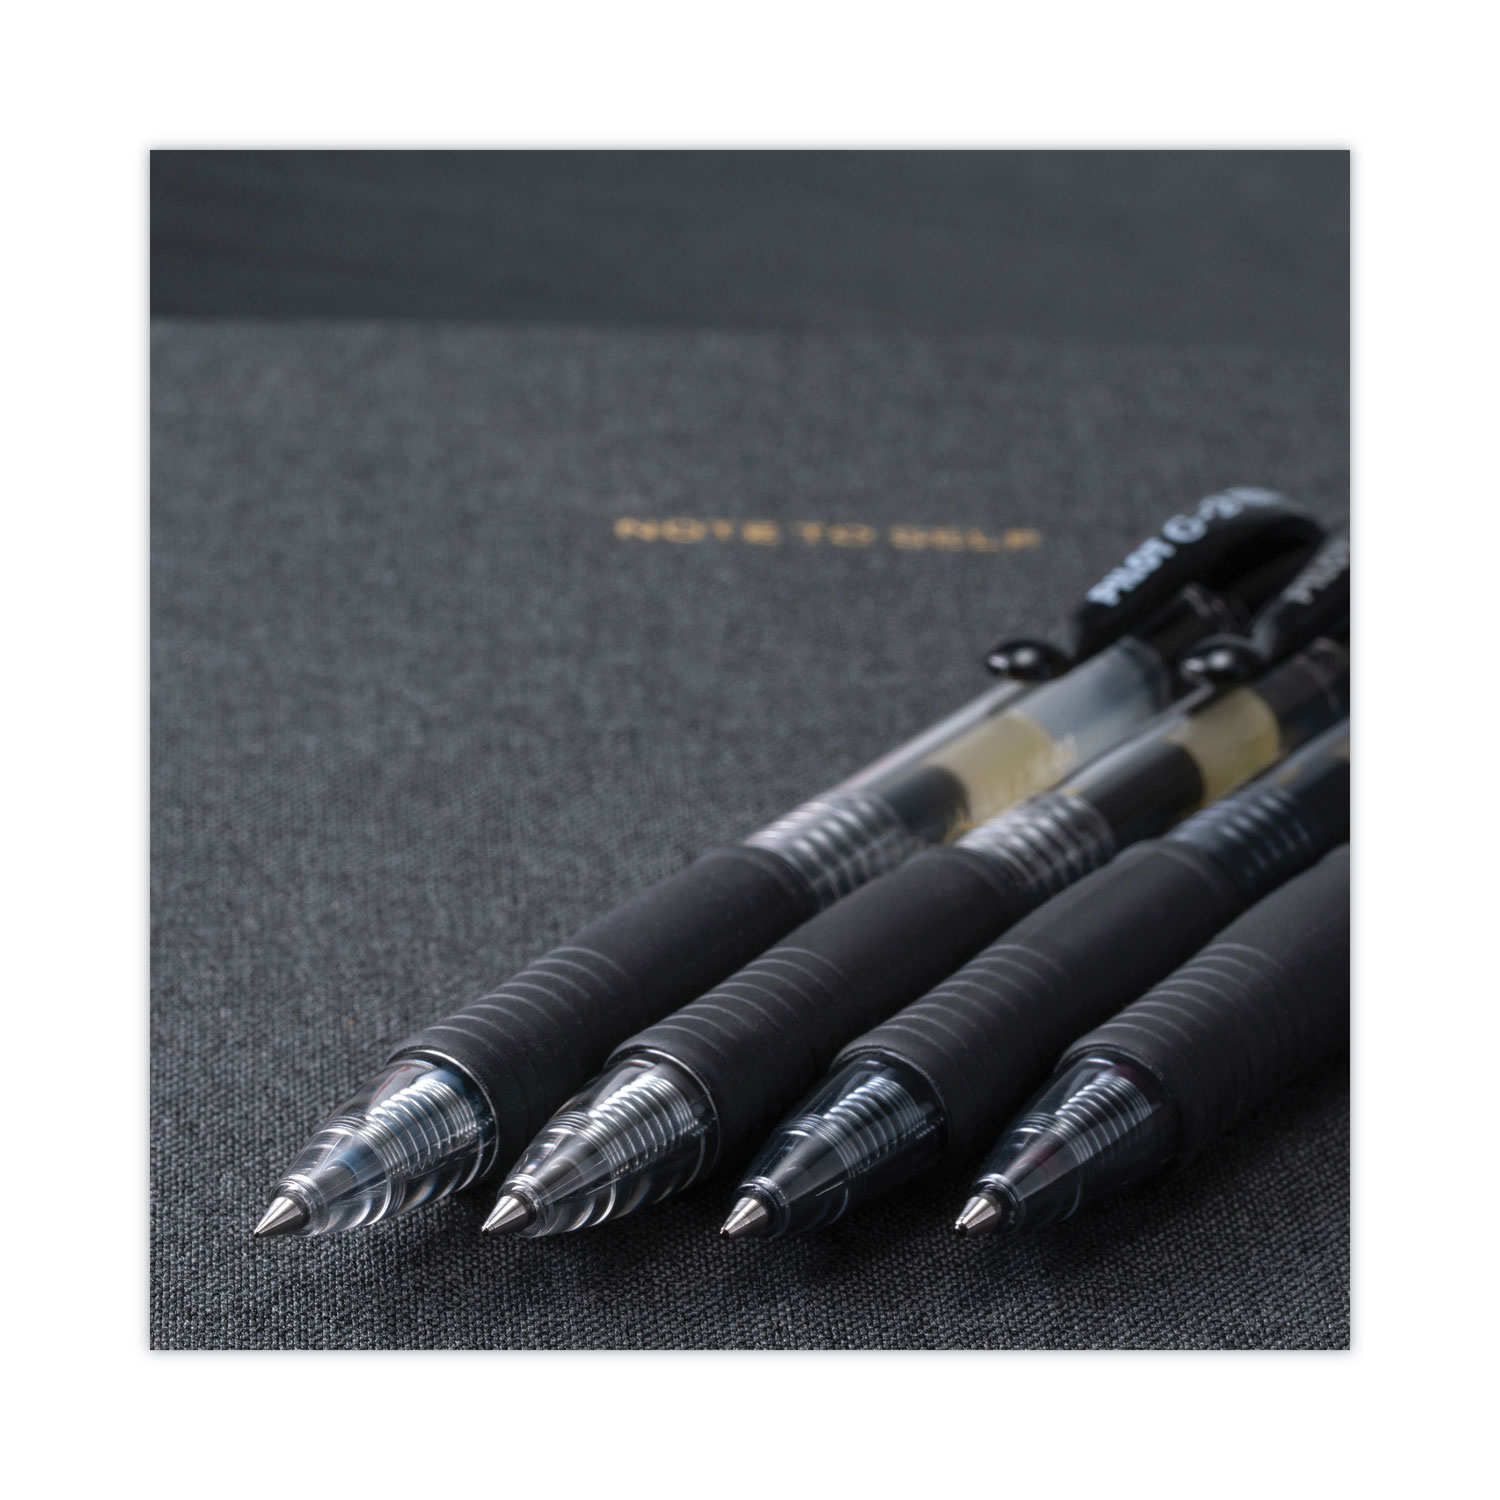 G2 Premium Gel Pen by Pilot® PIL31021